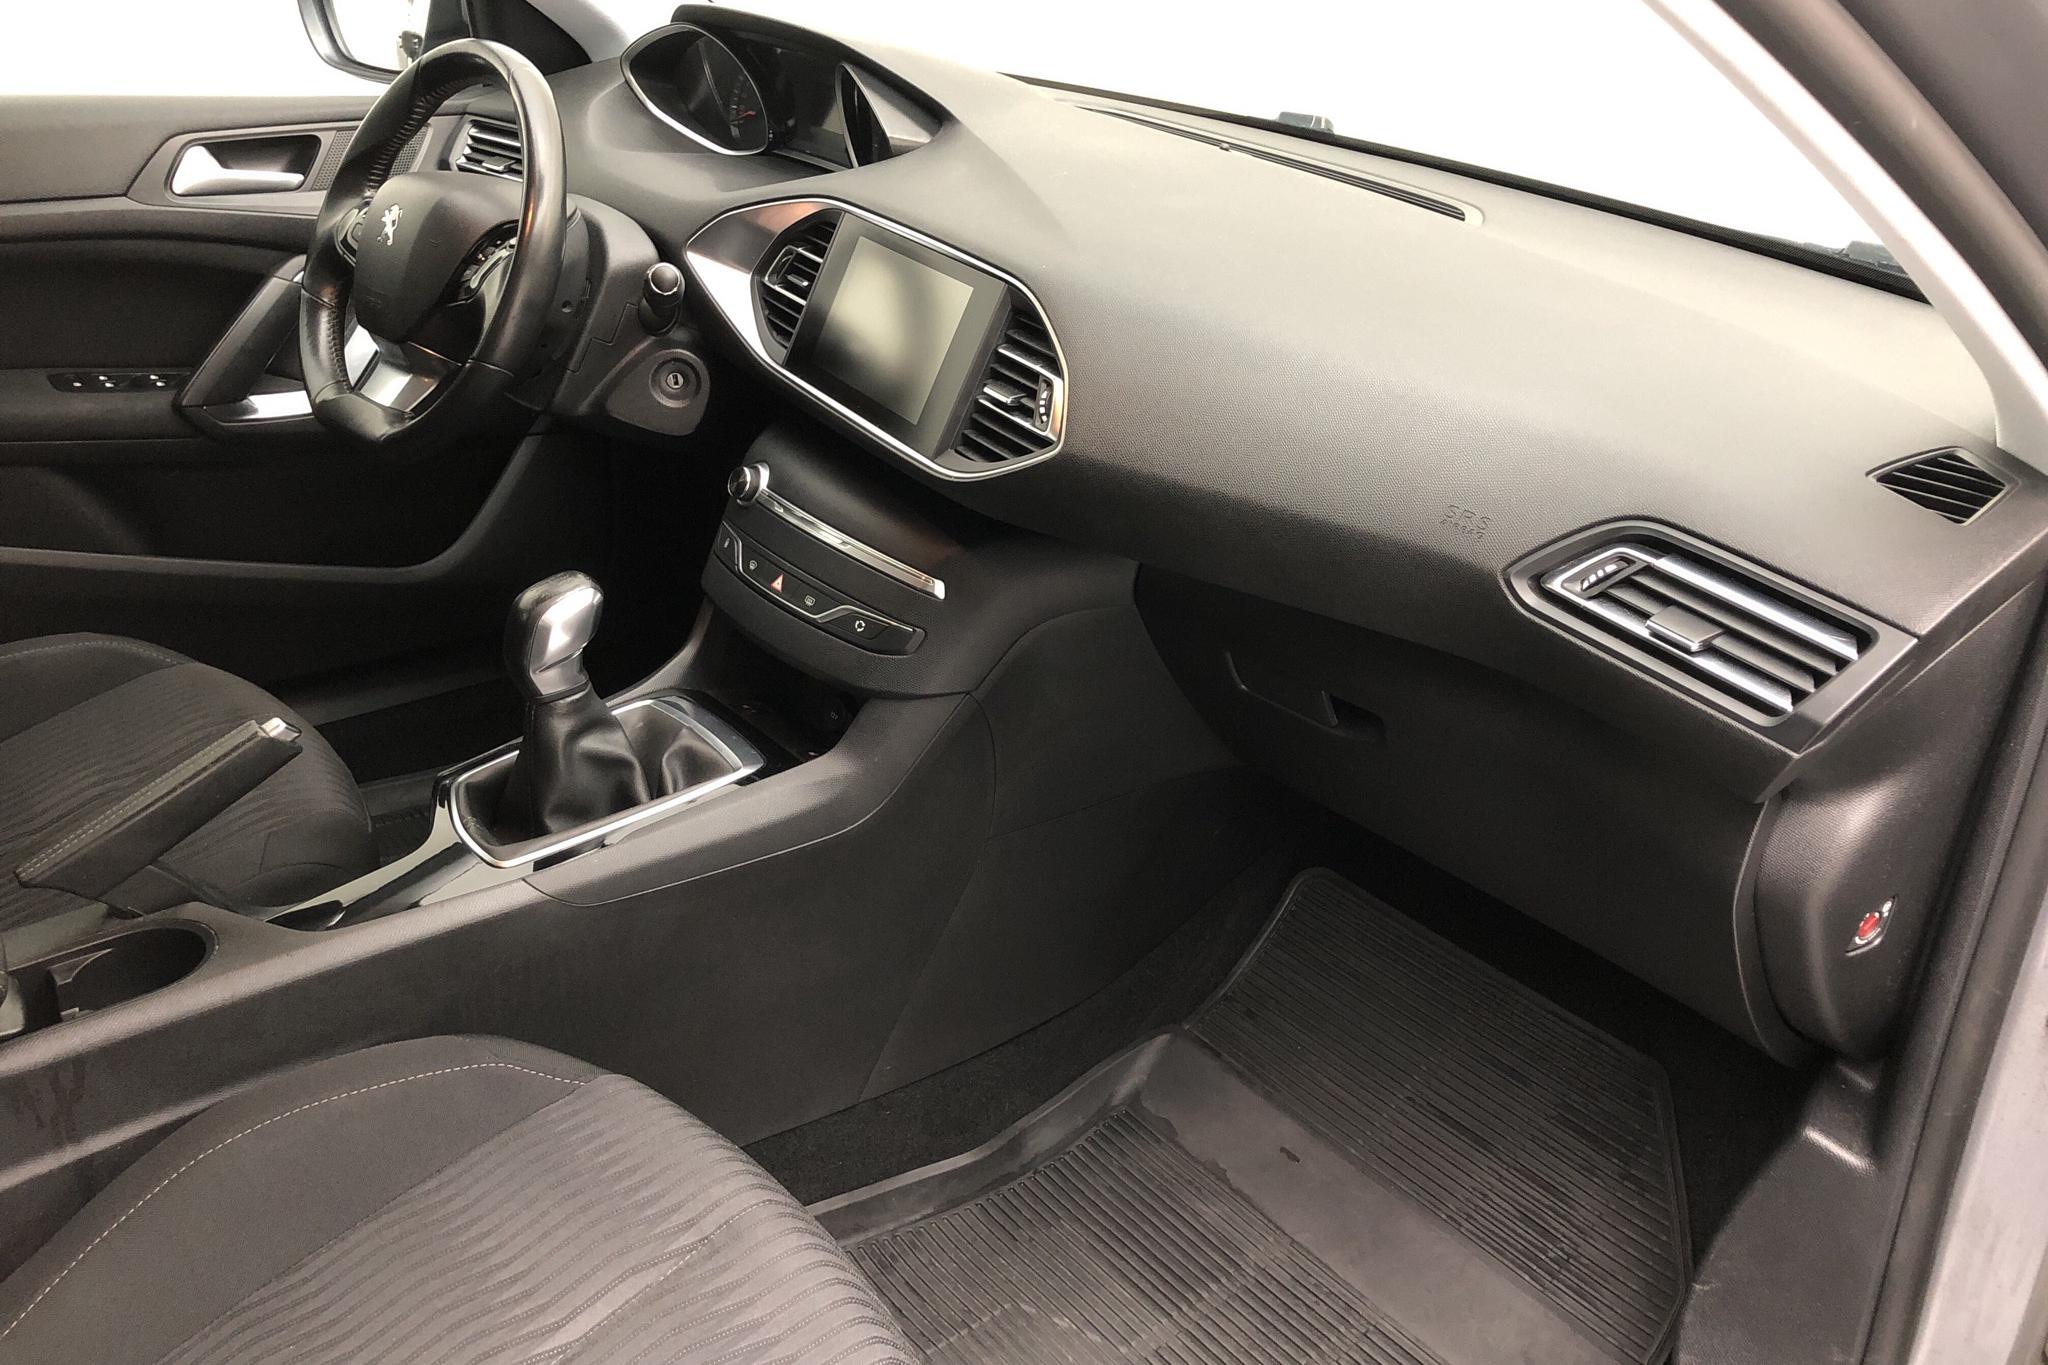 Peugeot 308 1.6 HDi (92hk) - 203 750 km - Manual - gray - 2015